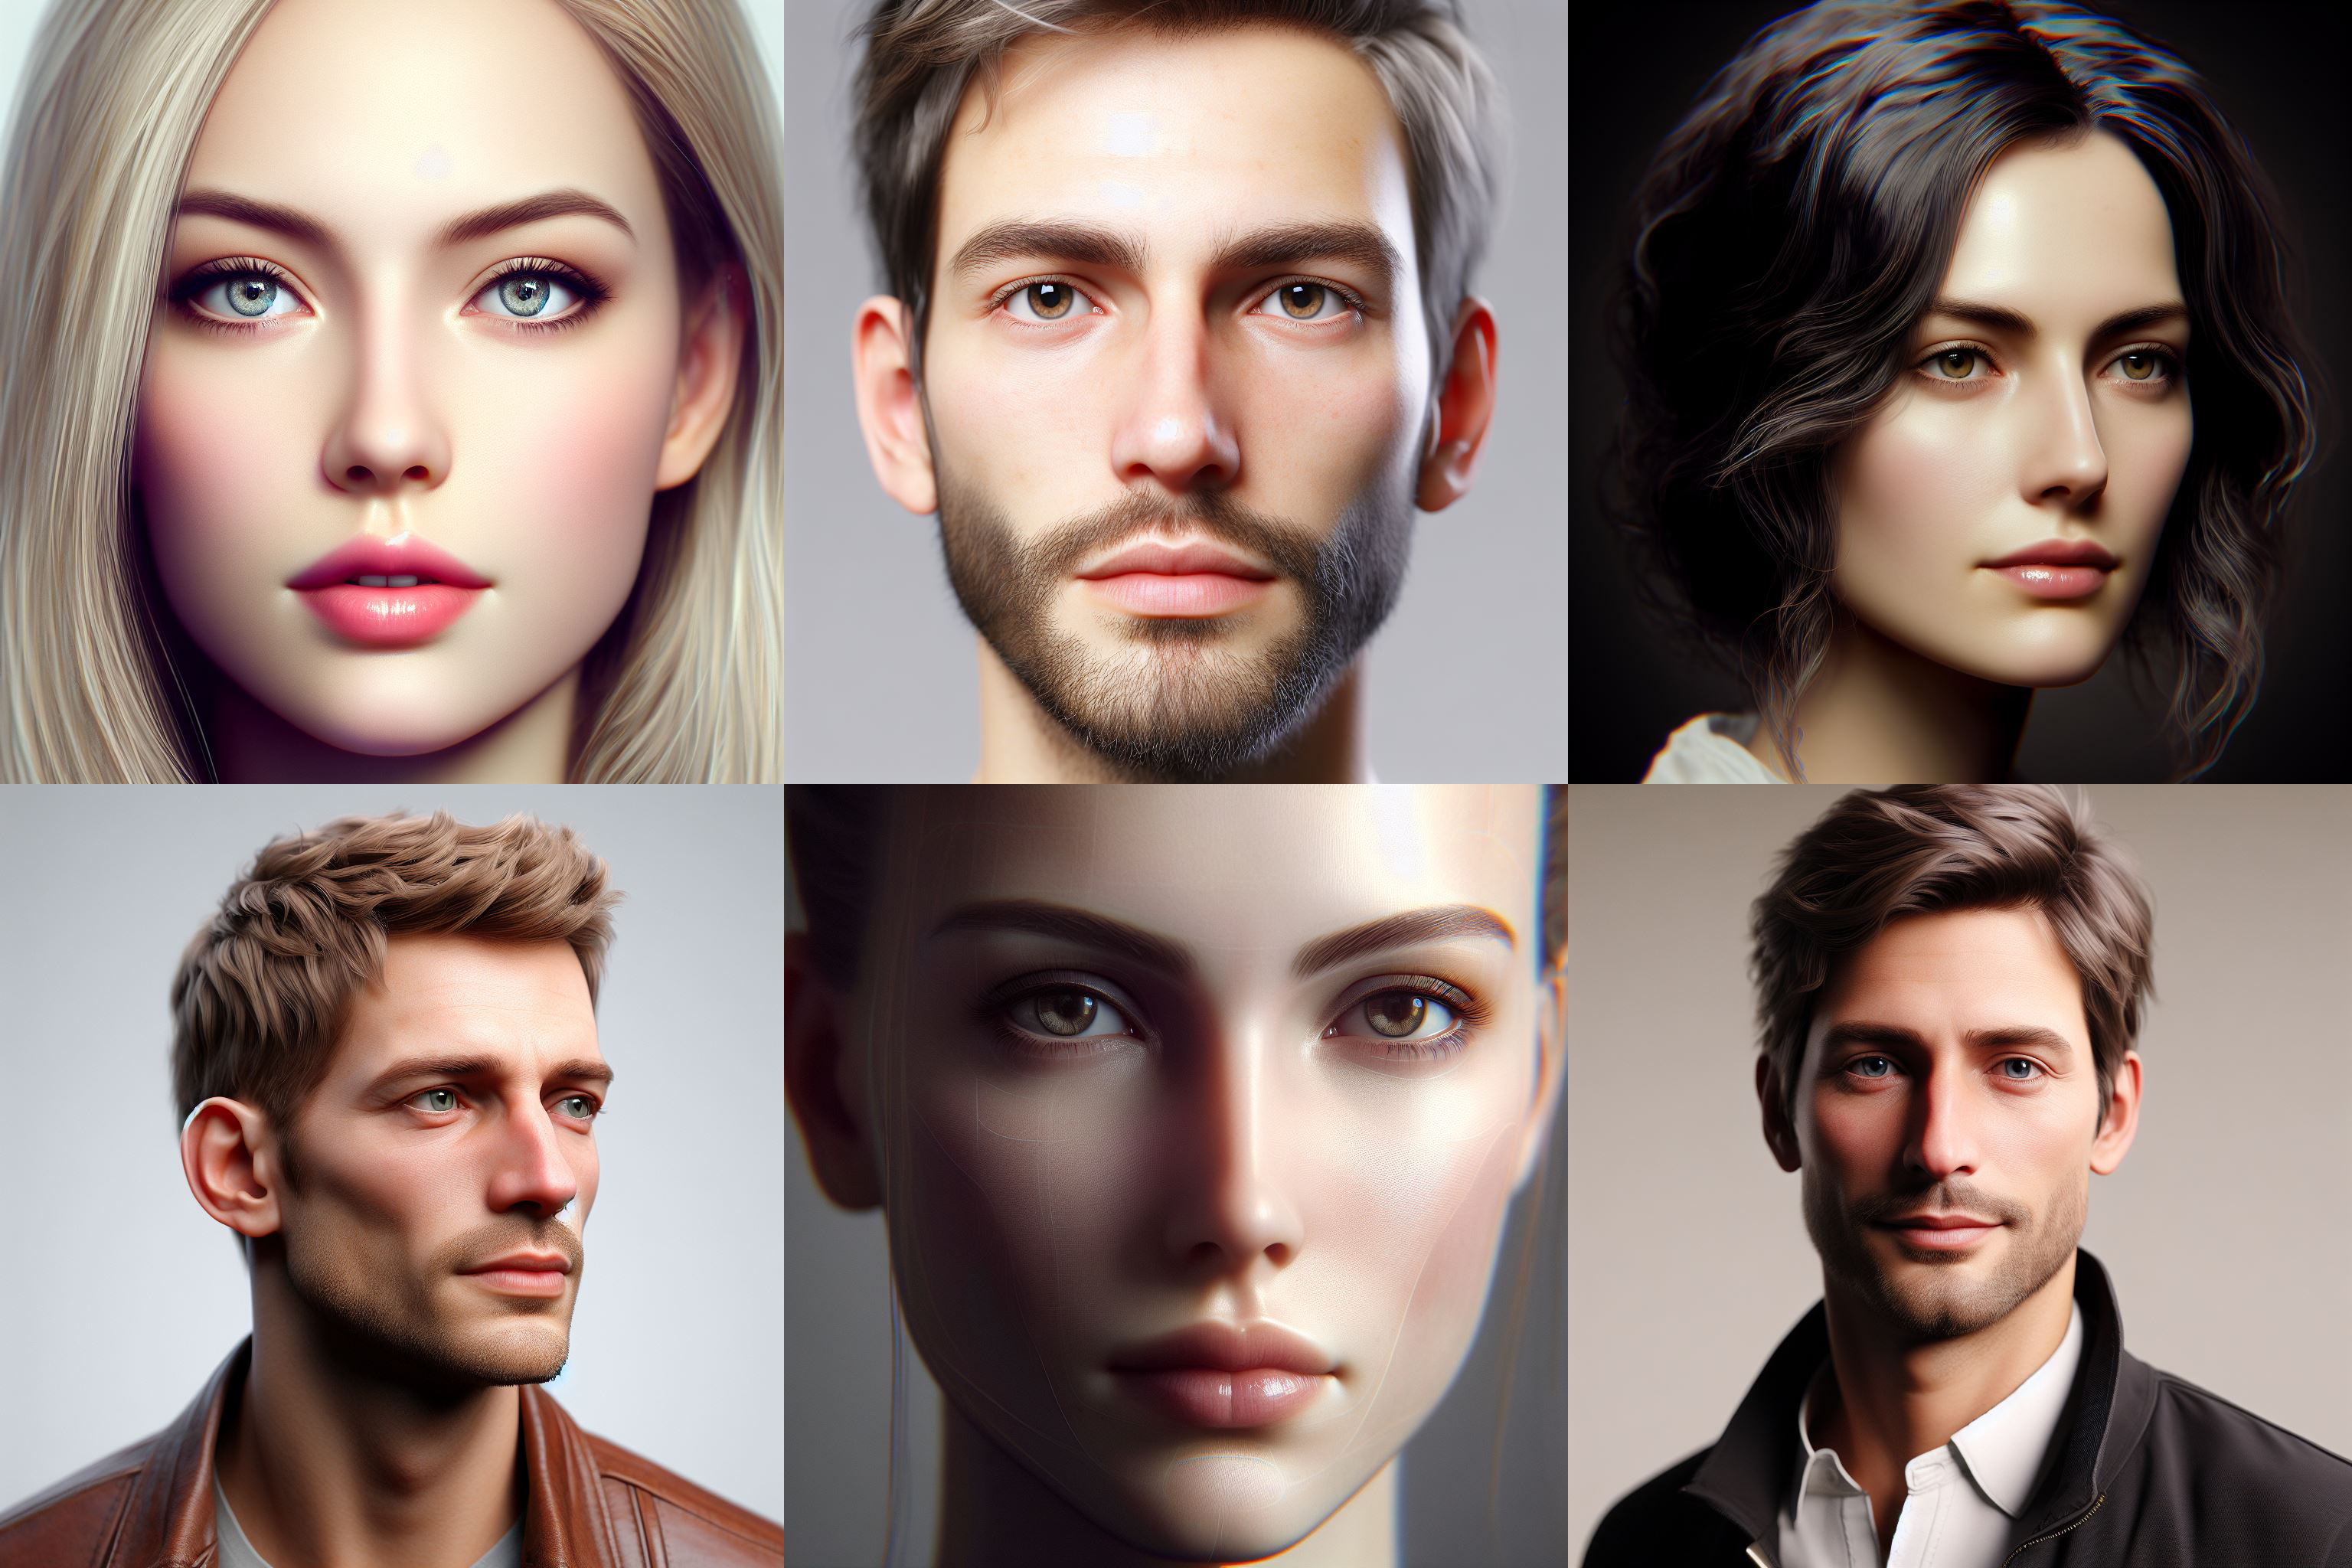 Une étude révèle que les gens sont plus enclins à faire confiance aux visages blancs sur les photos générées que sur les photos réelles